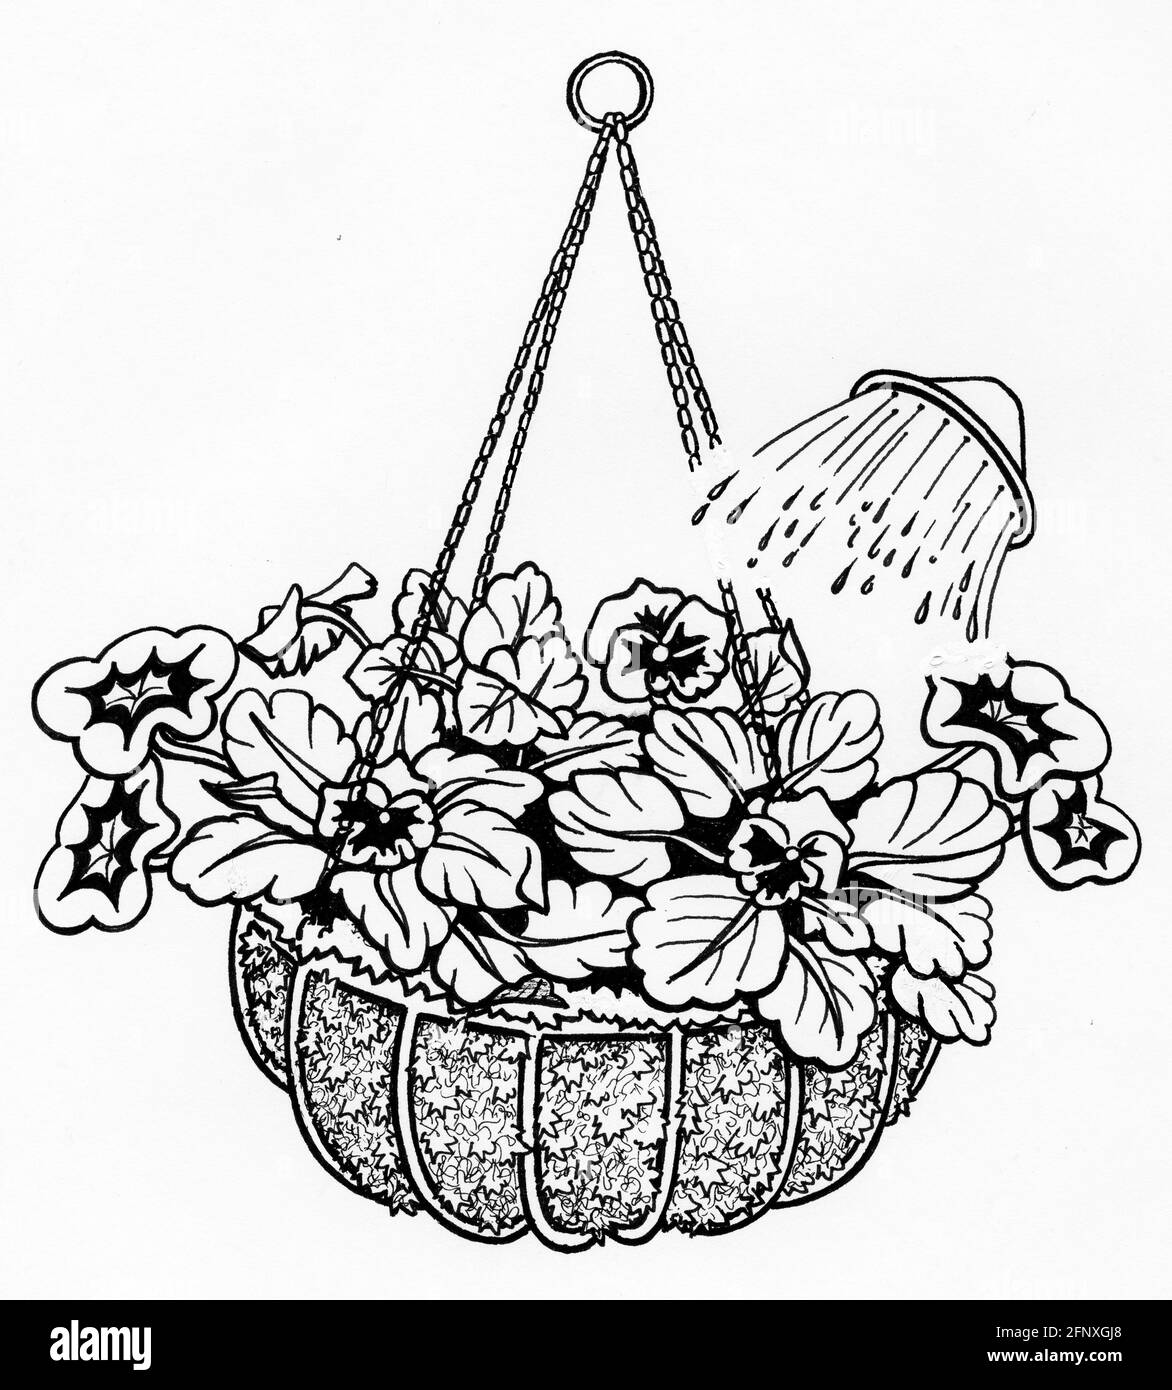 Un dessin de l'arrosage d'un panier suspendu terminé avec un sac de mousse de sphagnum et de jeunes plantes qui ont a été planté Banque D'Images